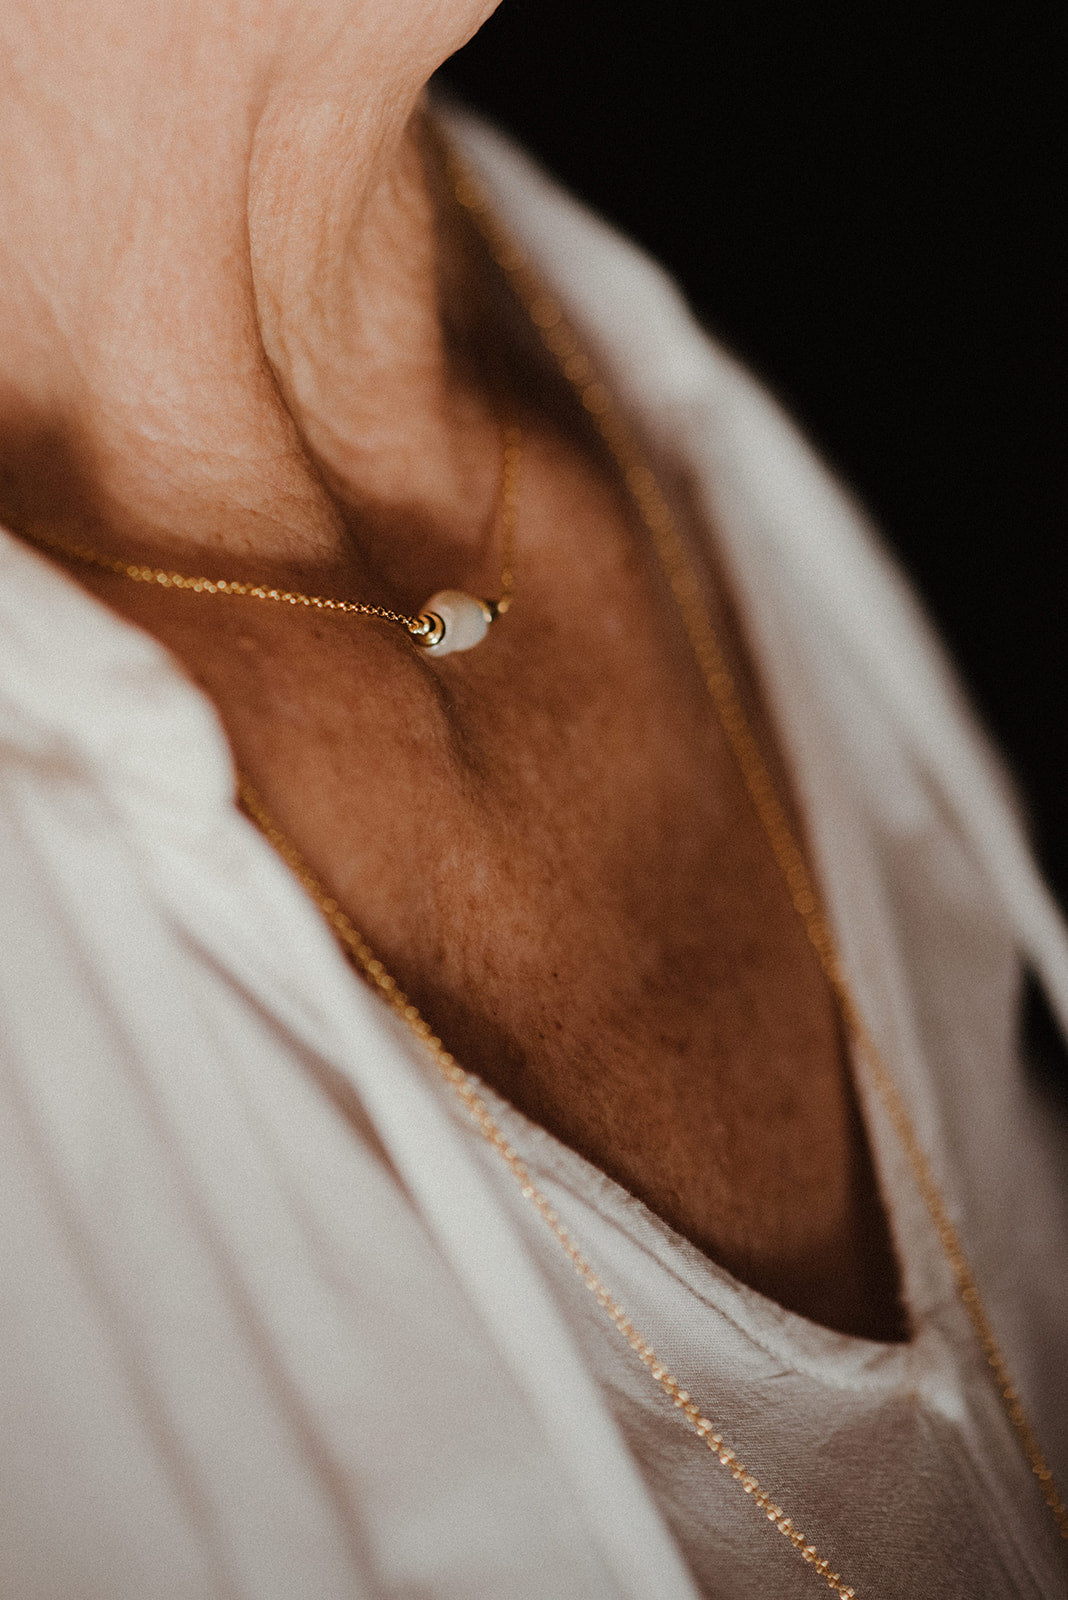 Náhrdelník s perlou. Stříbrný nebo pozlacený řetízek s přívěskem ze sladkovodní perly.